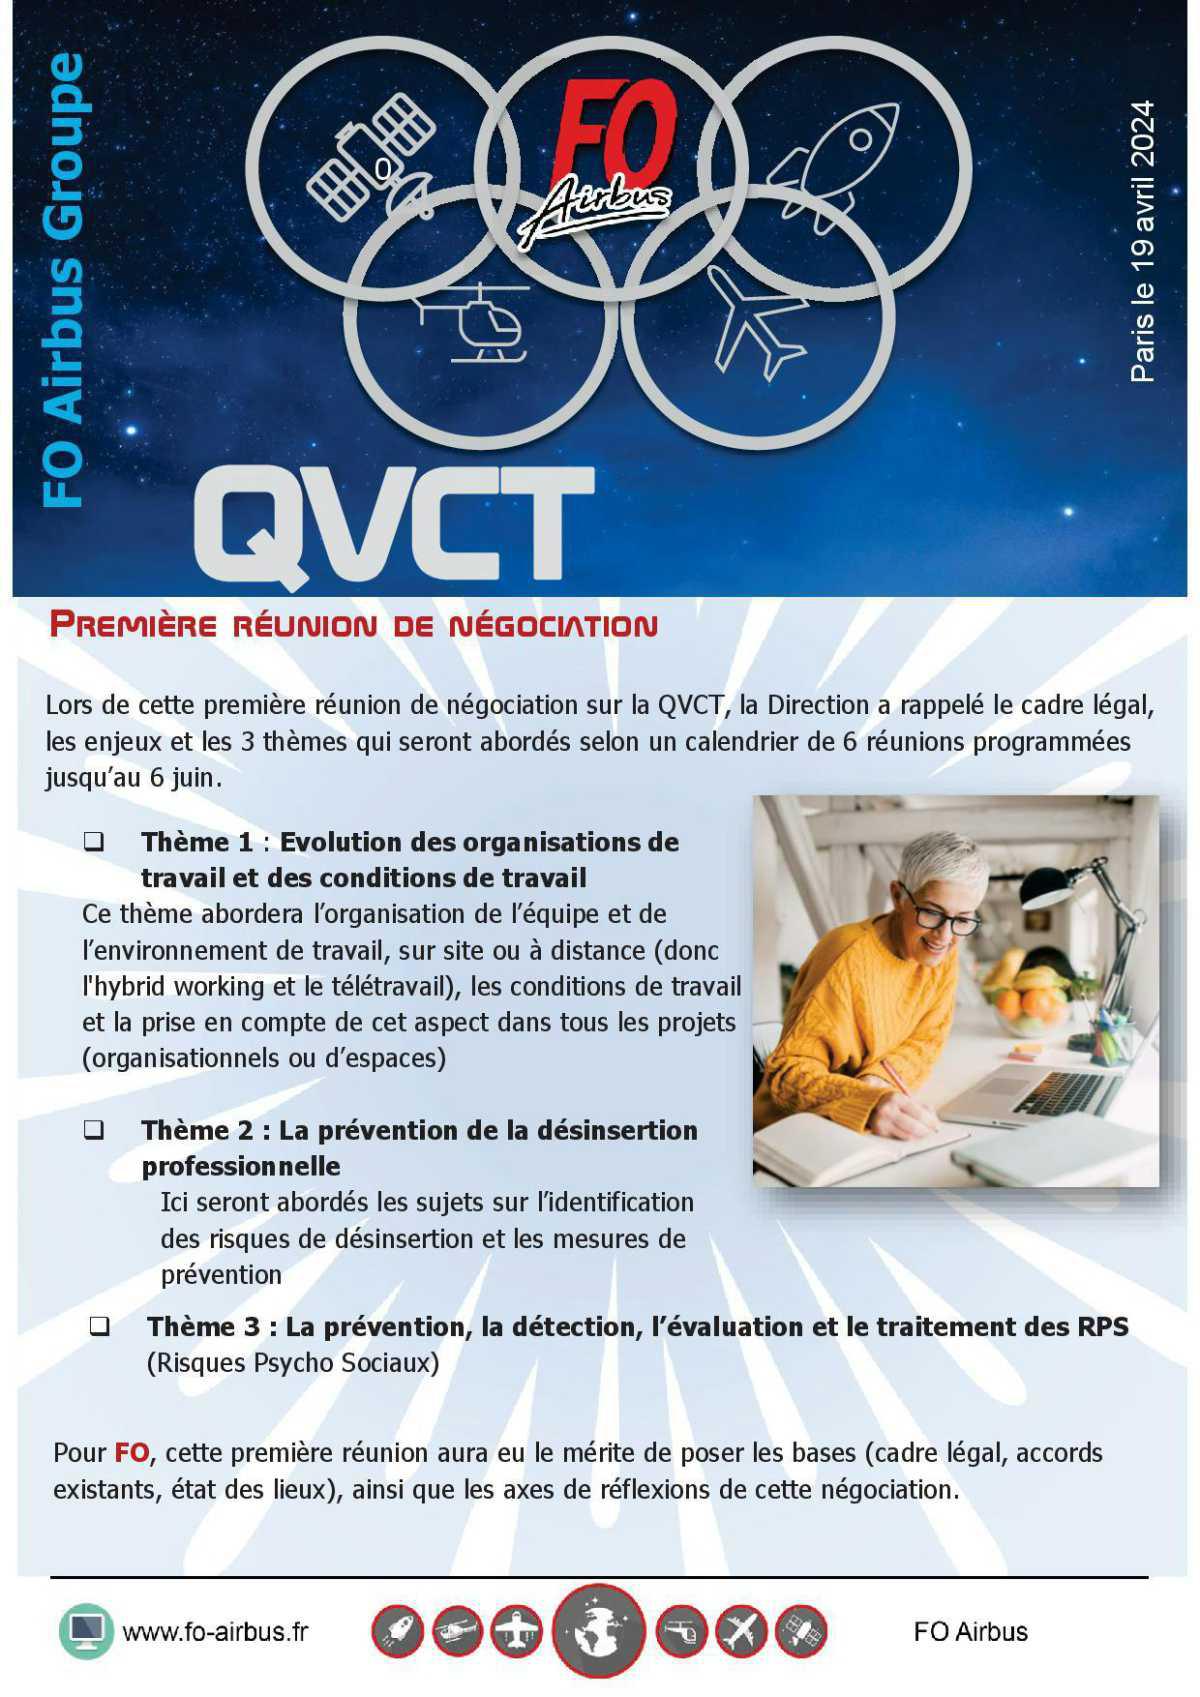 QVCT, 1ère réunion de négociation